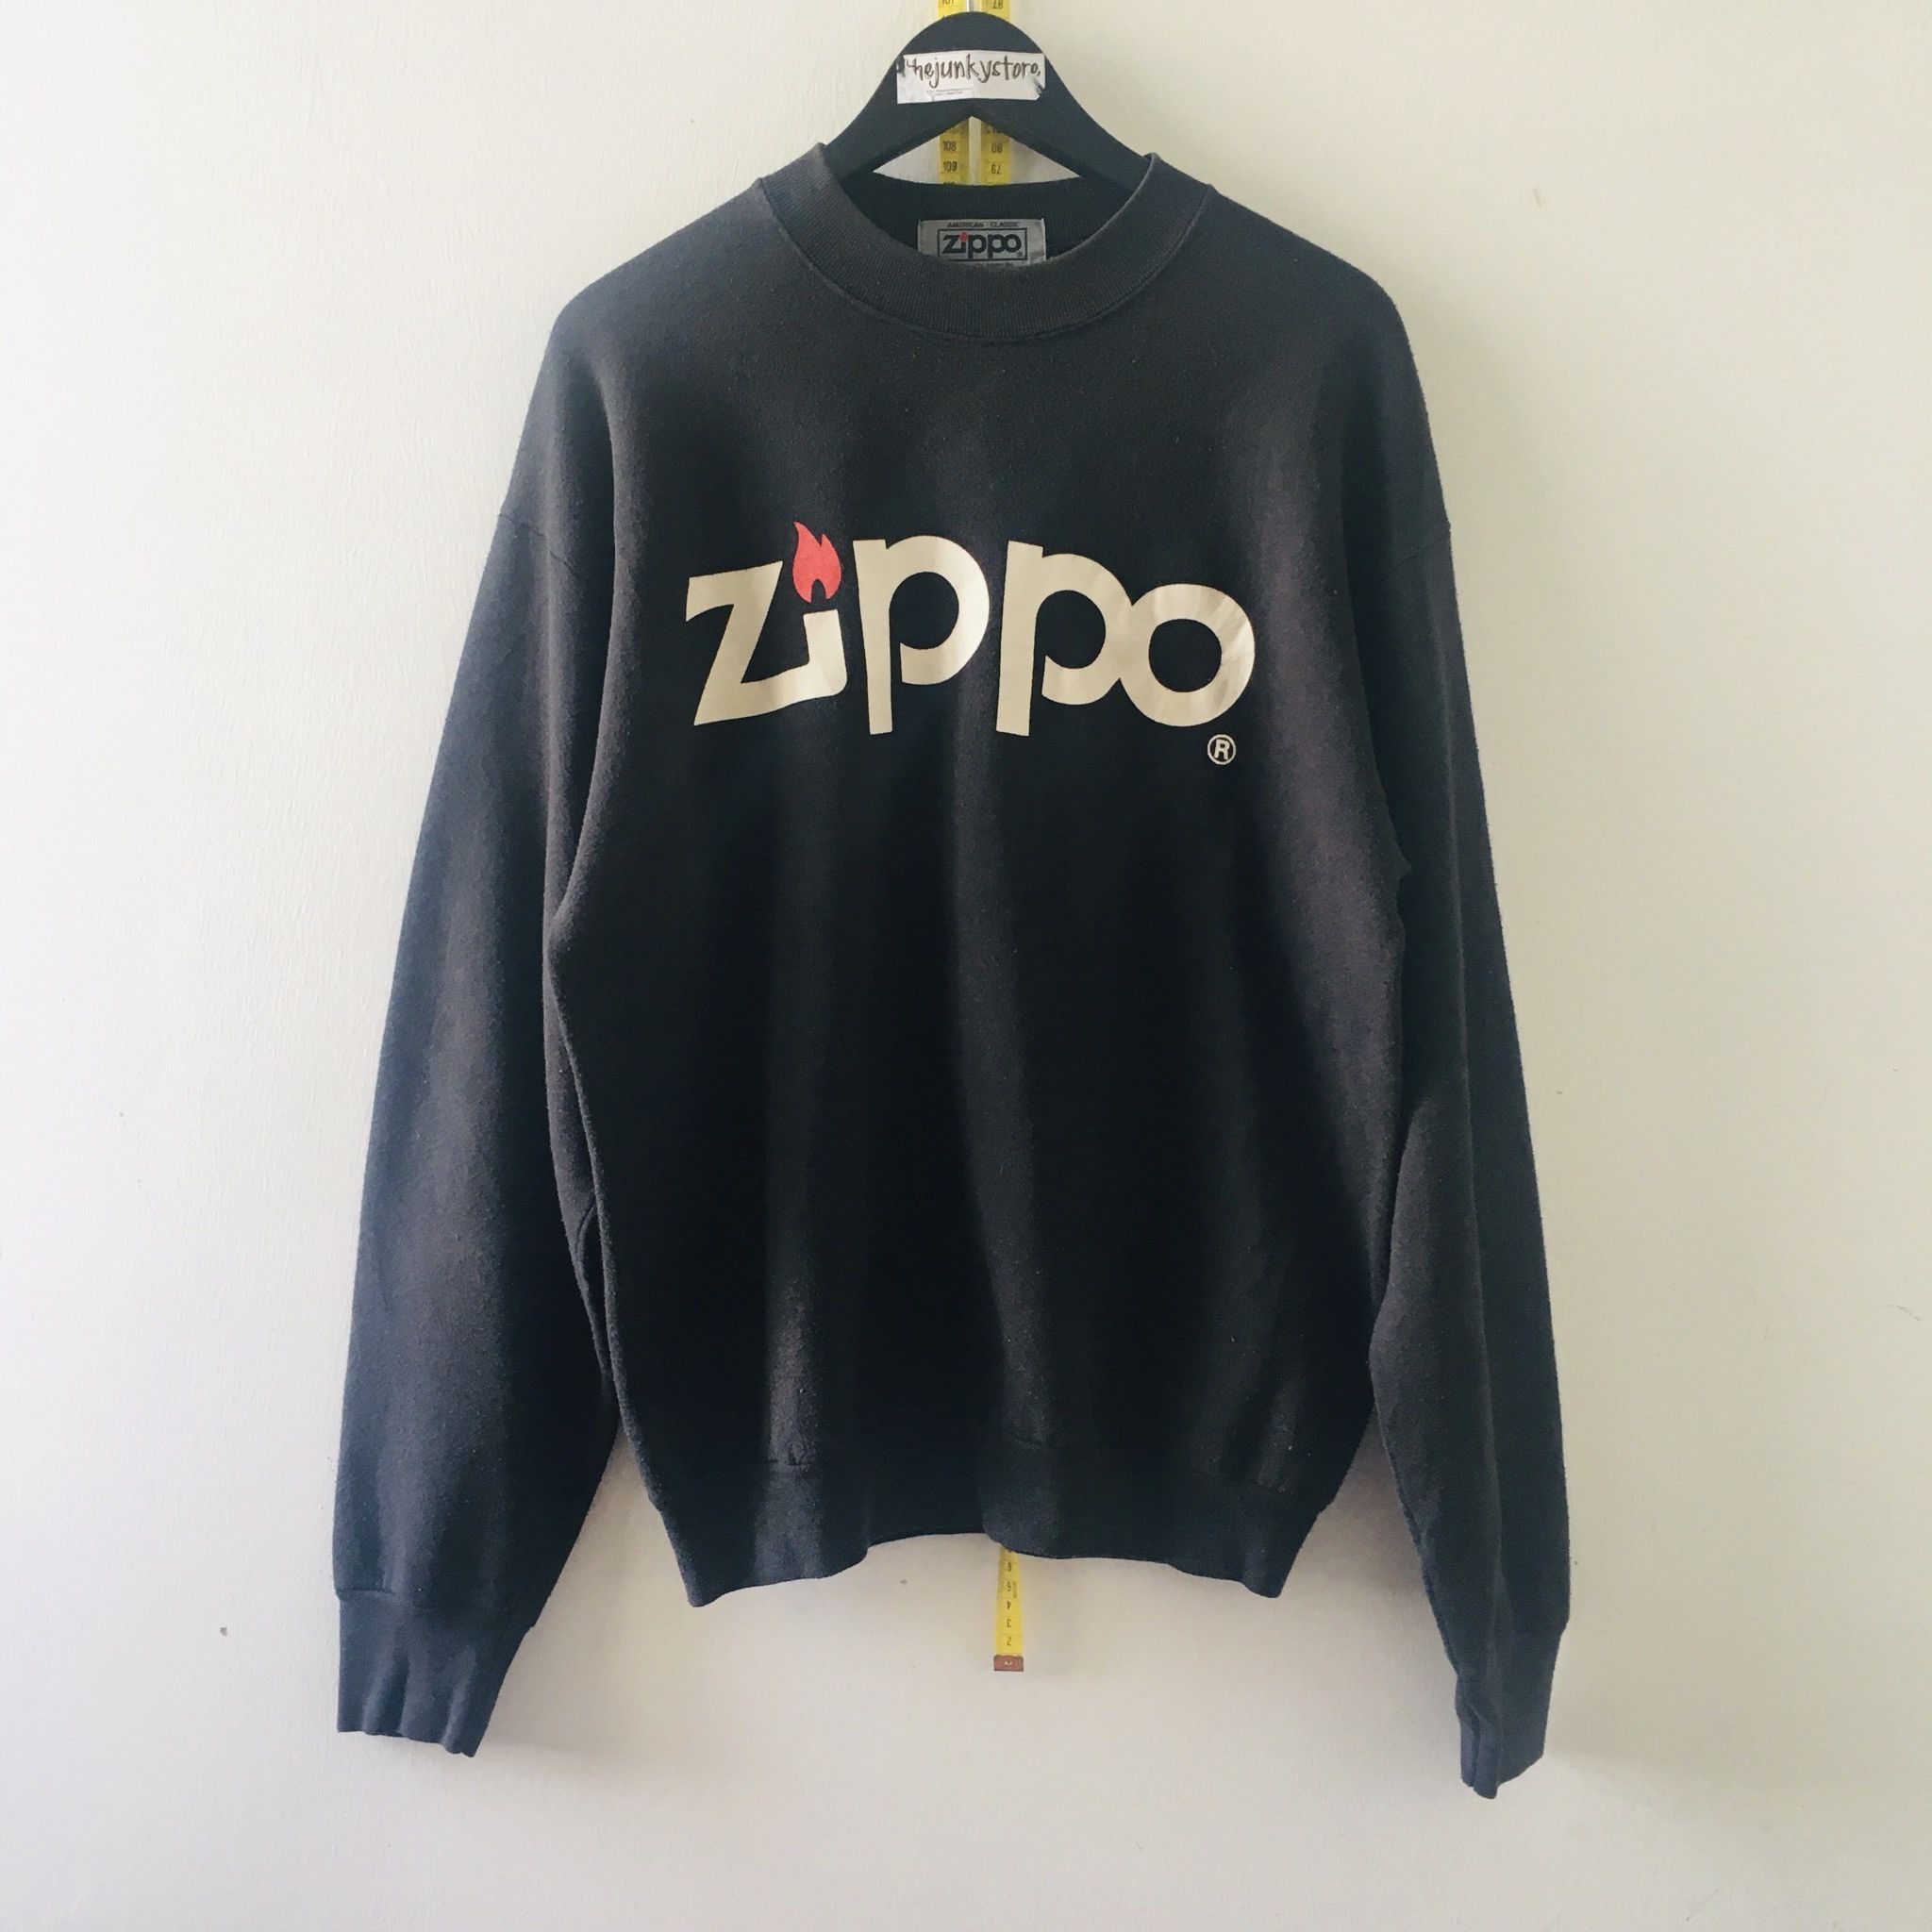 Vintage Vintage 90s x Zippo Sweatshirt x Fruit Of The Loom Size US L / EU 52-54 / 3 - 1 Preview